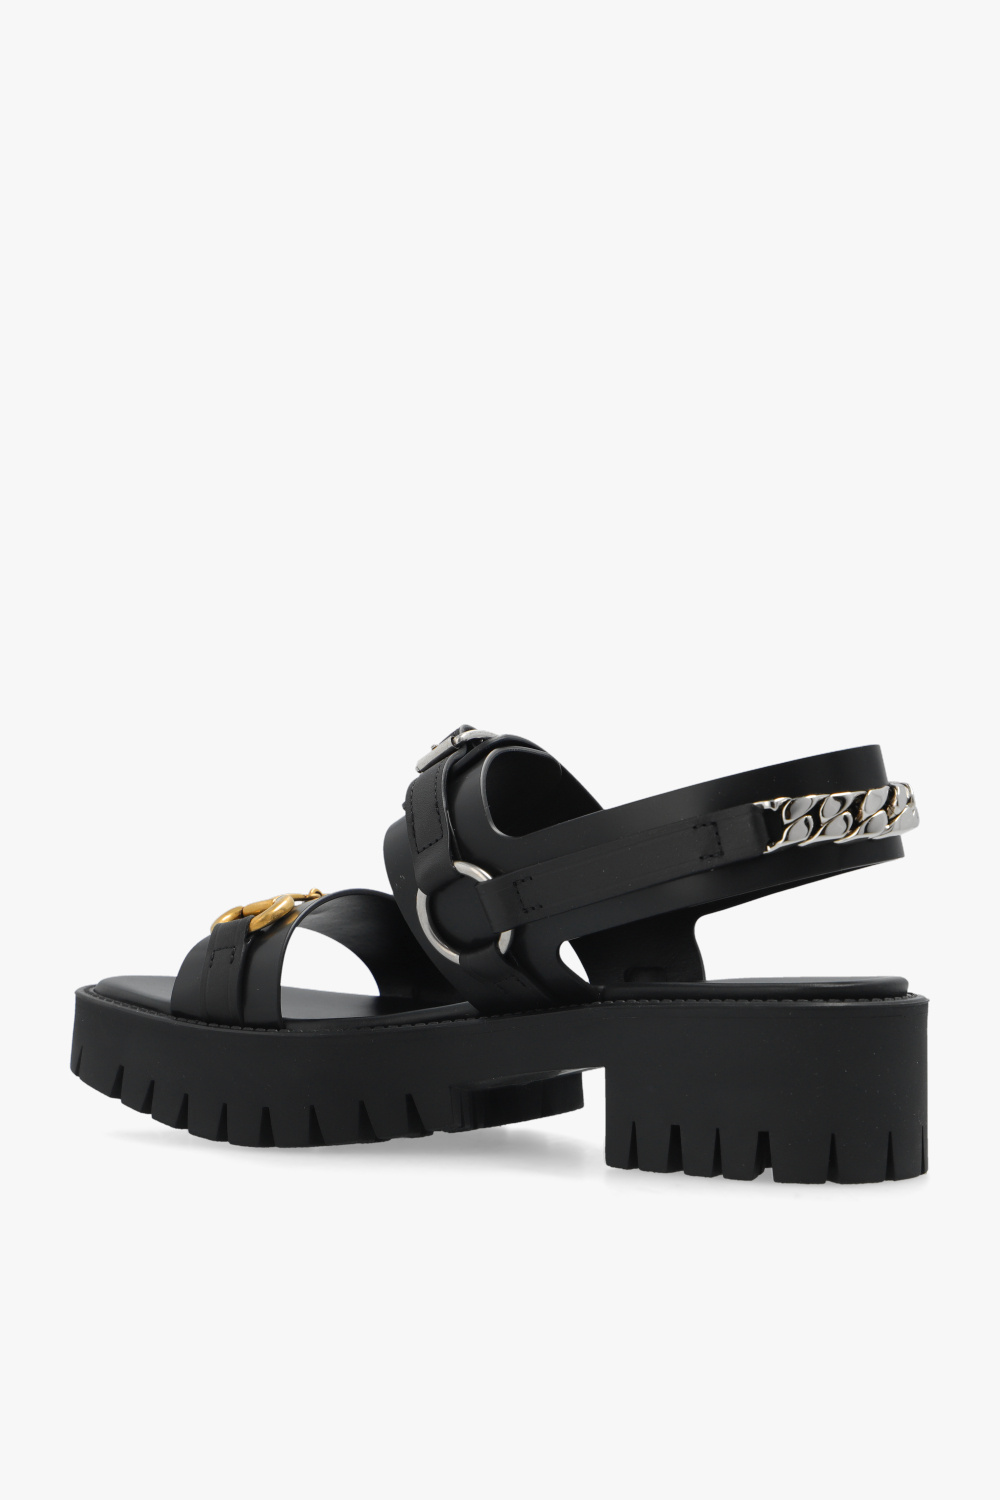 Gucci Sandals with horsebit